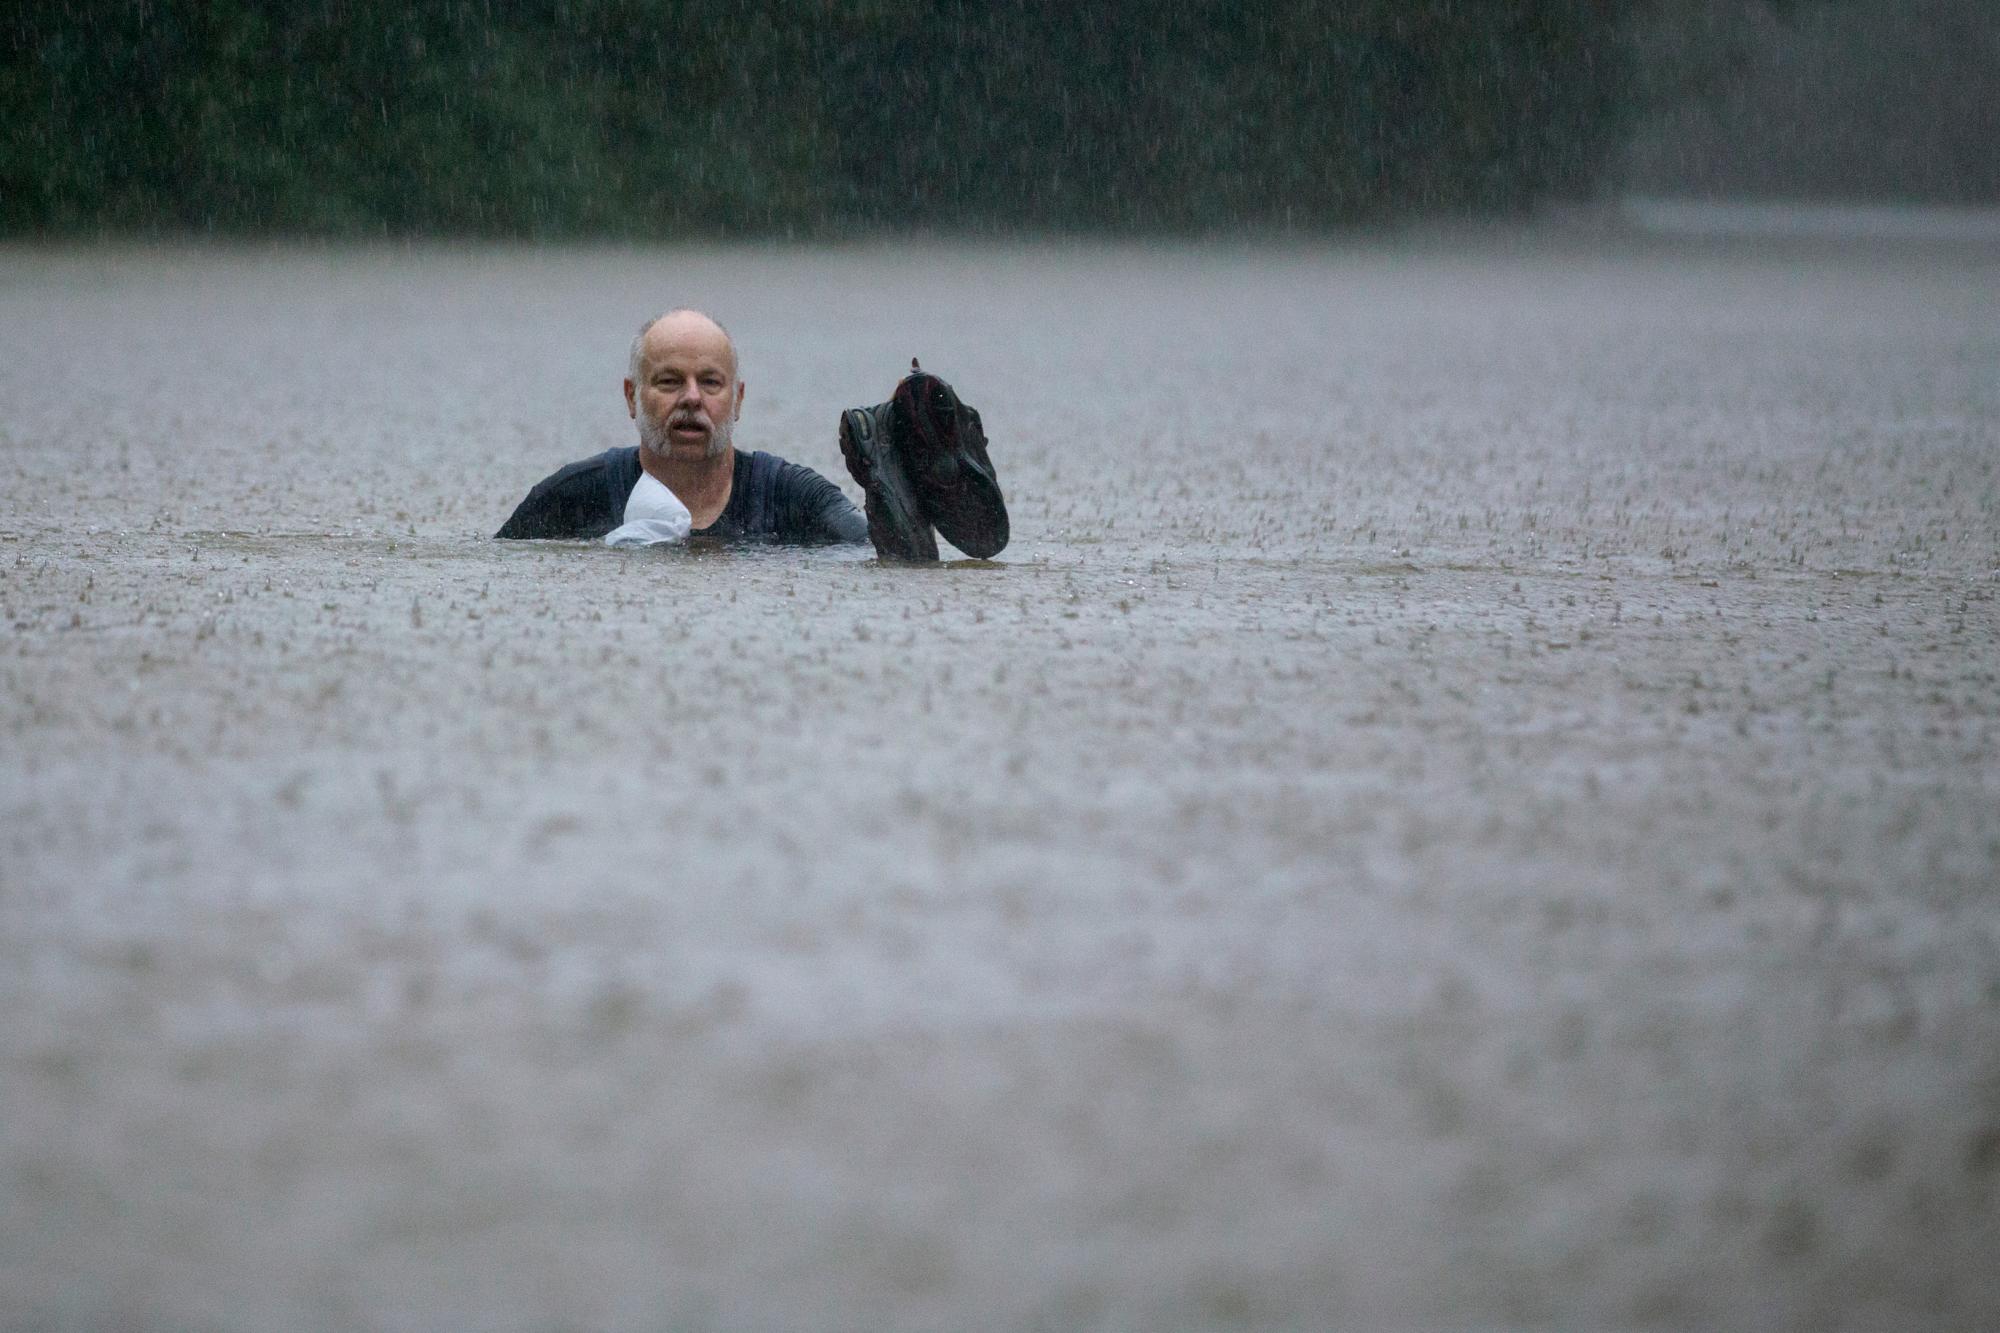 Un hombre vadea a través de las inundaciones causadas por las fuertes lluvias generadas por la depresión tropical Imelda inundó el área el jueves 19 de septiembre de 2019 en Patton Village, Texas. 